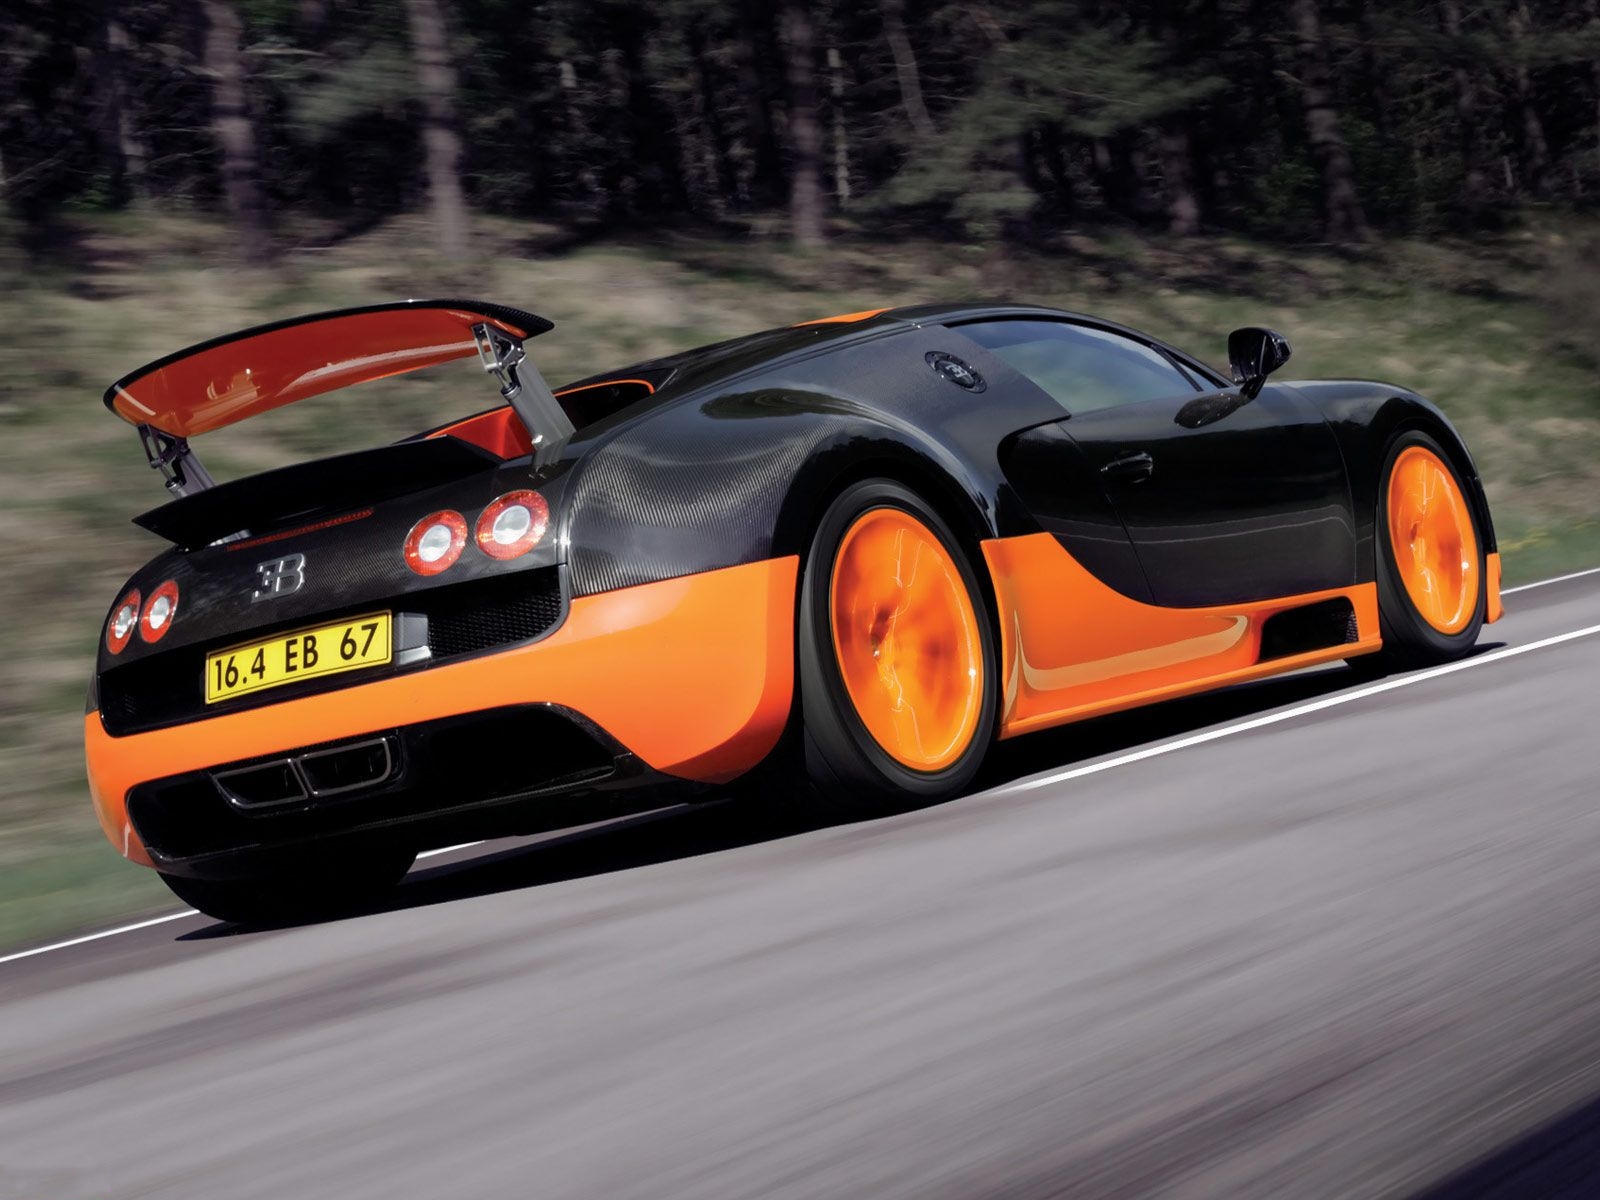 Télécharger des fonds d'écran Bugatti Veyron 16 4 Grand Sport HD